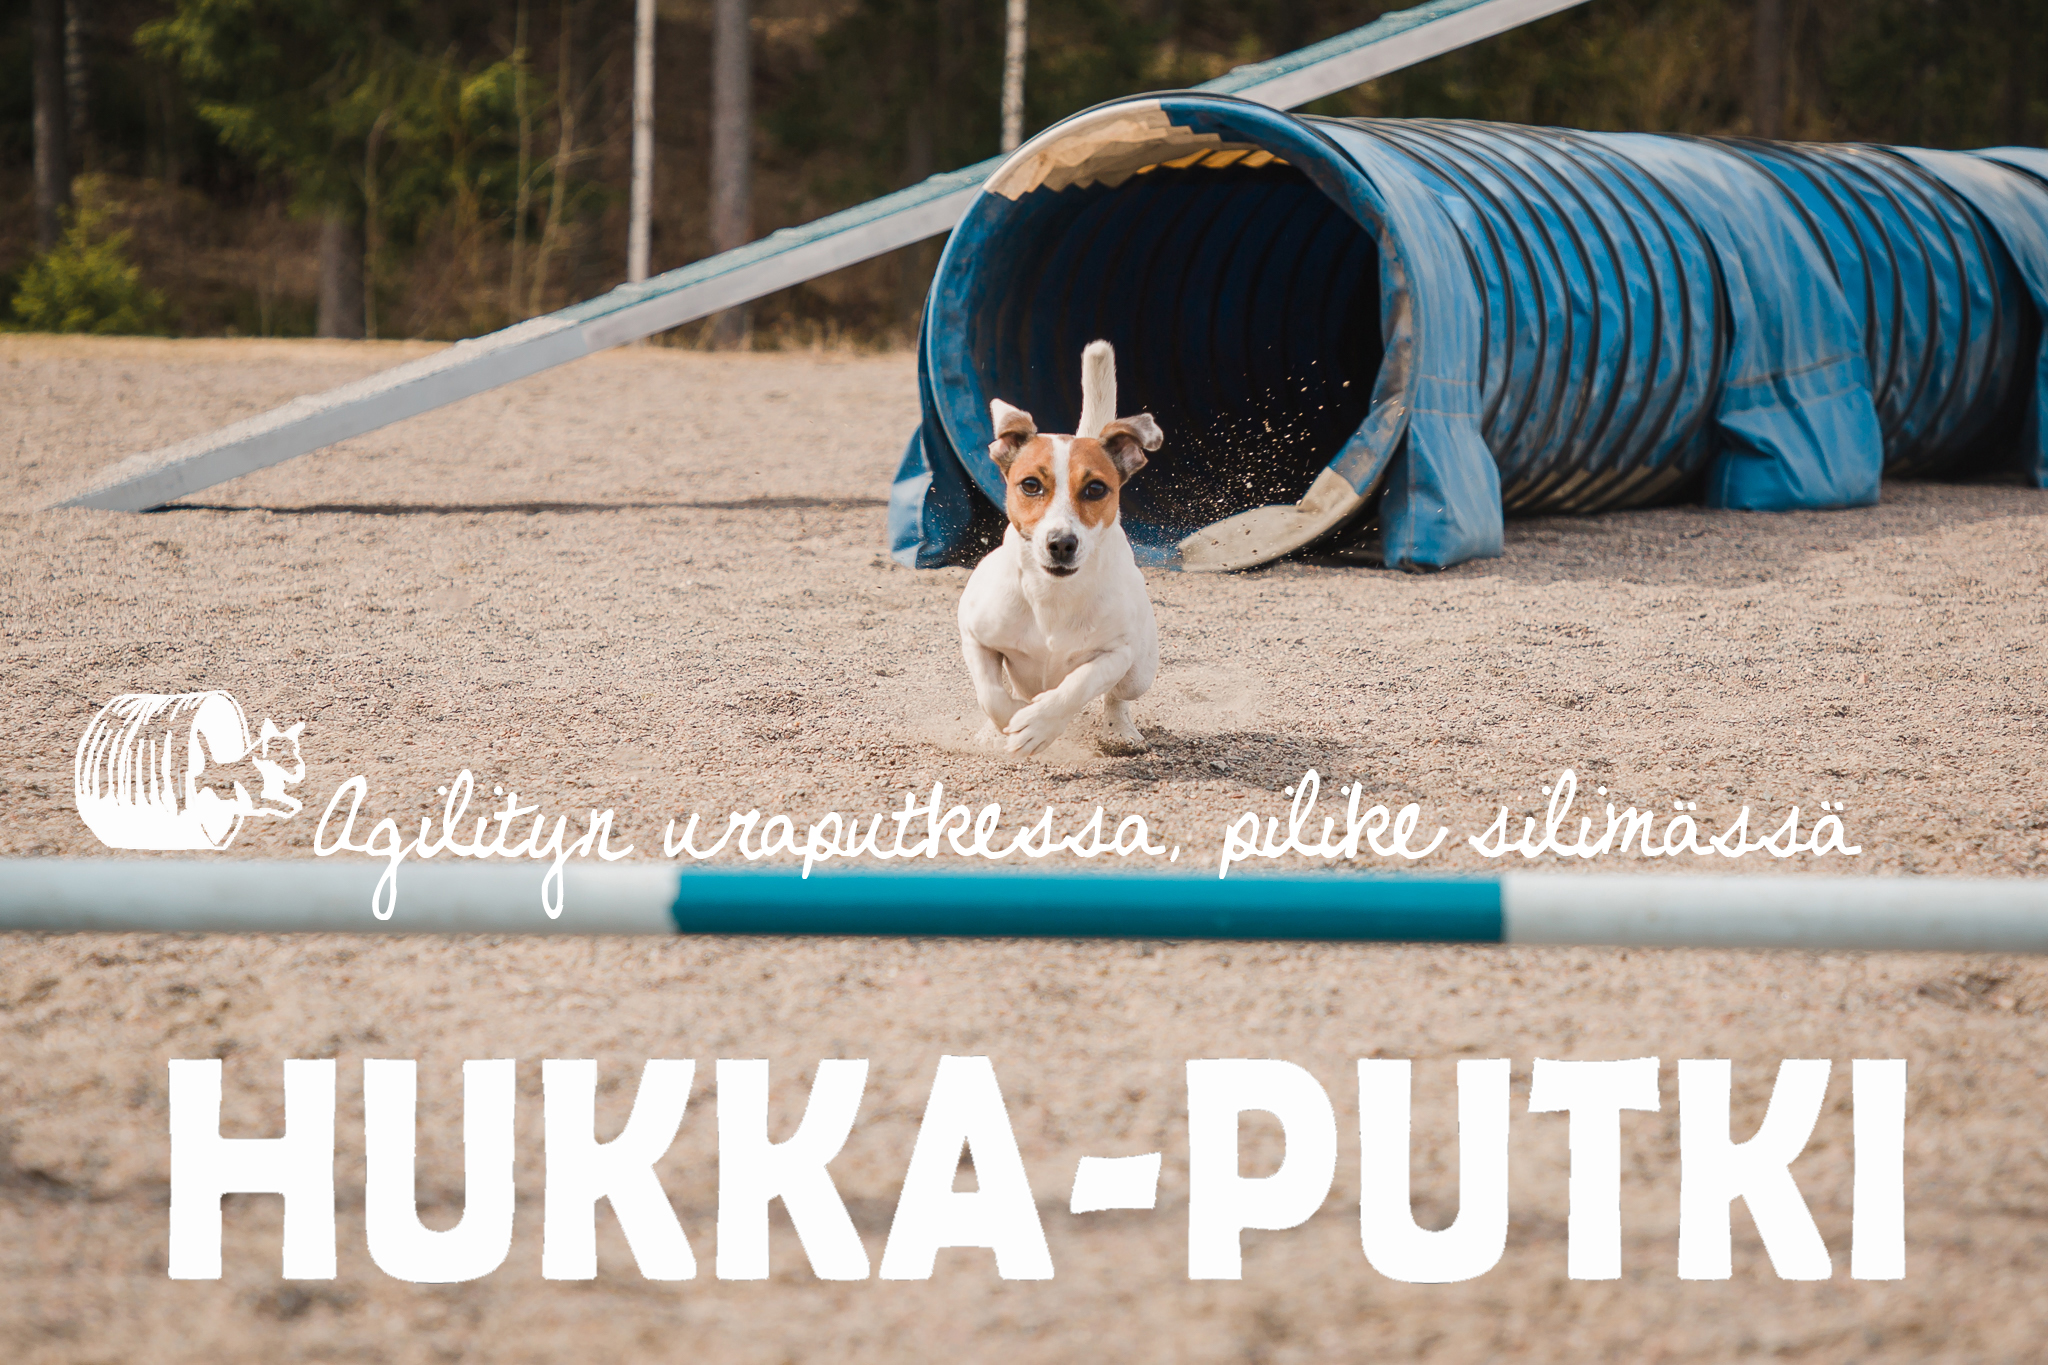 Hukka-Putki ry